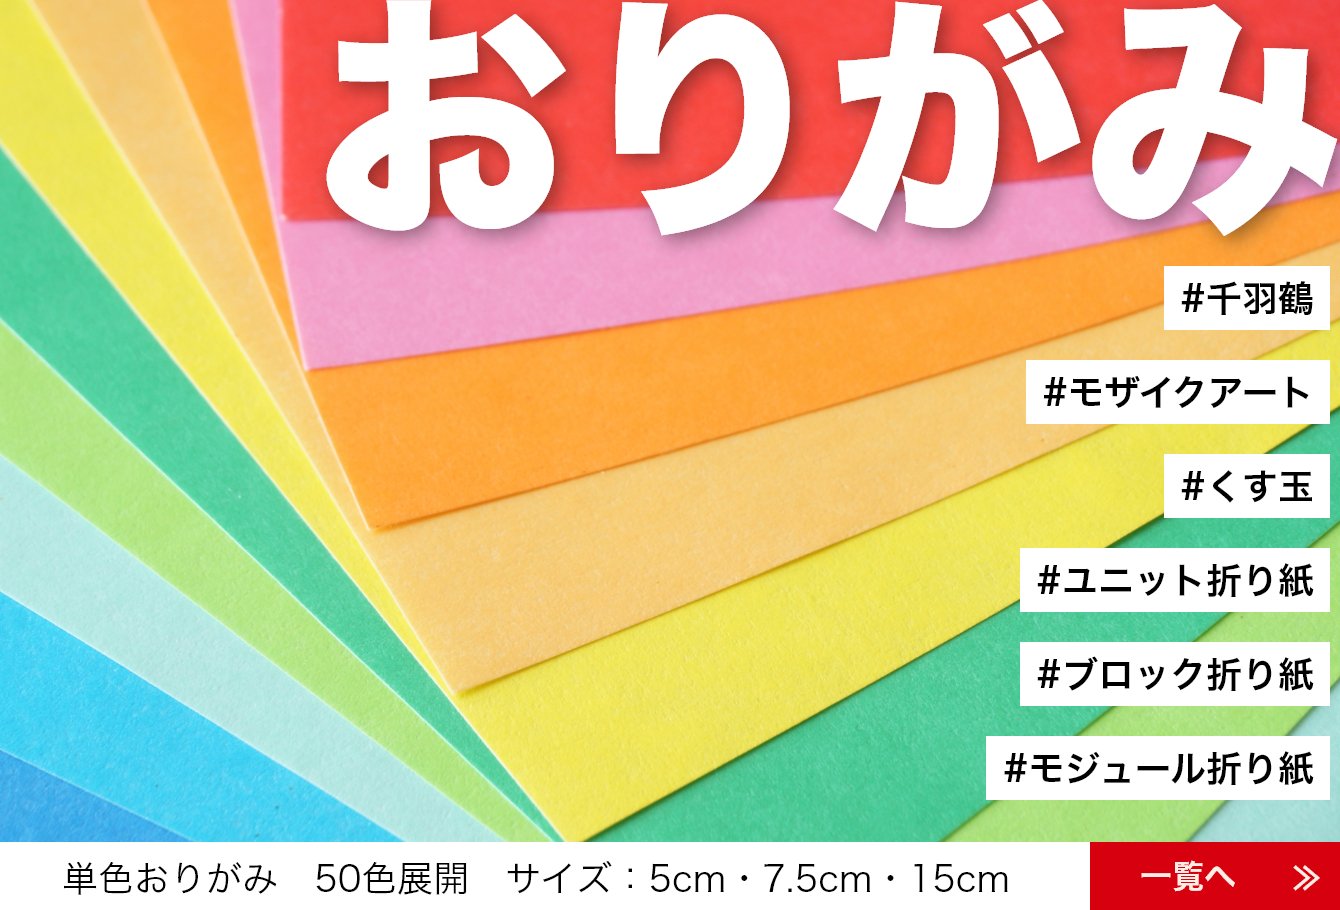 千羽鶴のお店 「千羽の鶴オンラインショップ」 折り鶴折り紙の販売